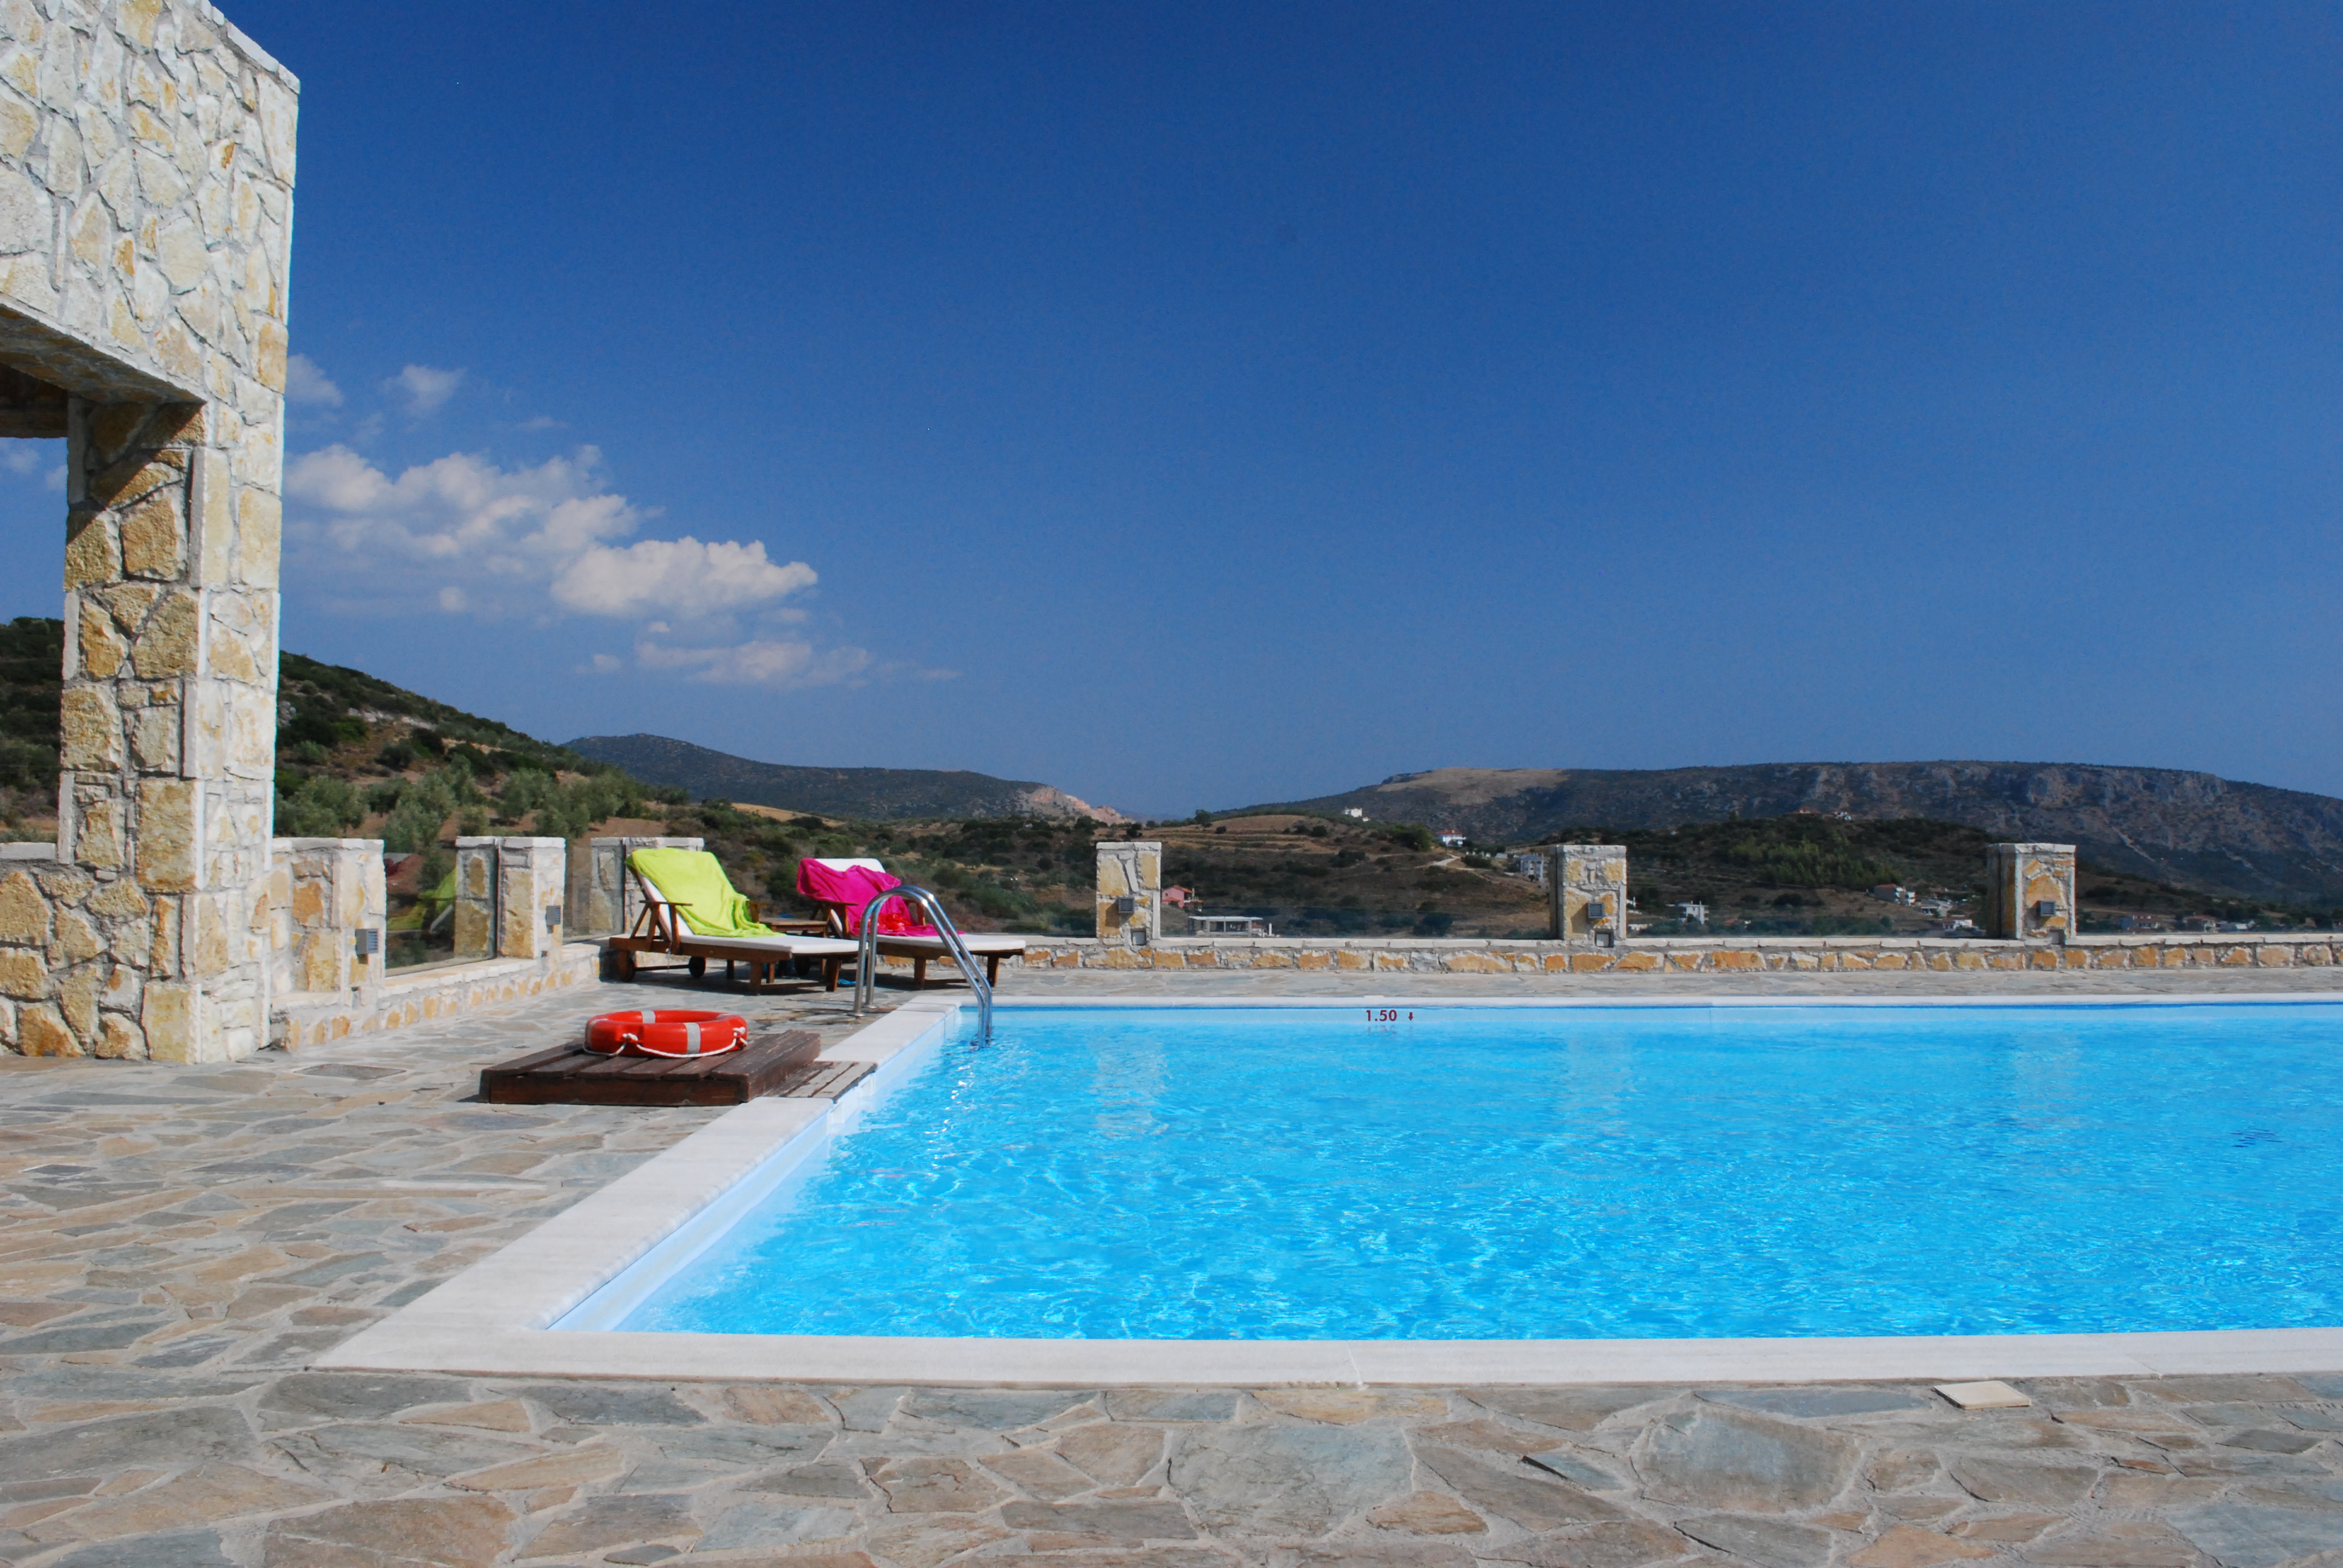 Swimming pool at Hotel Perivoli in Greece